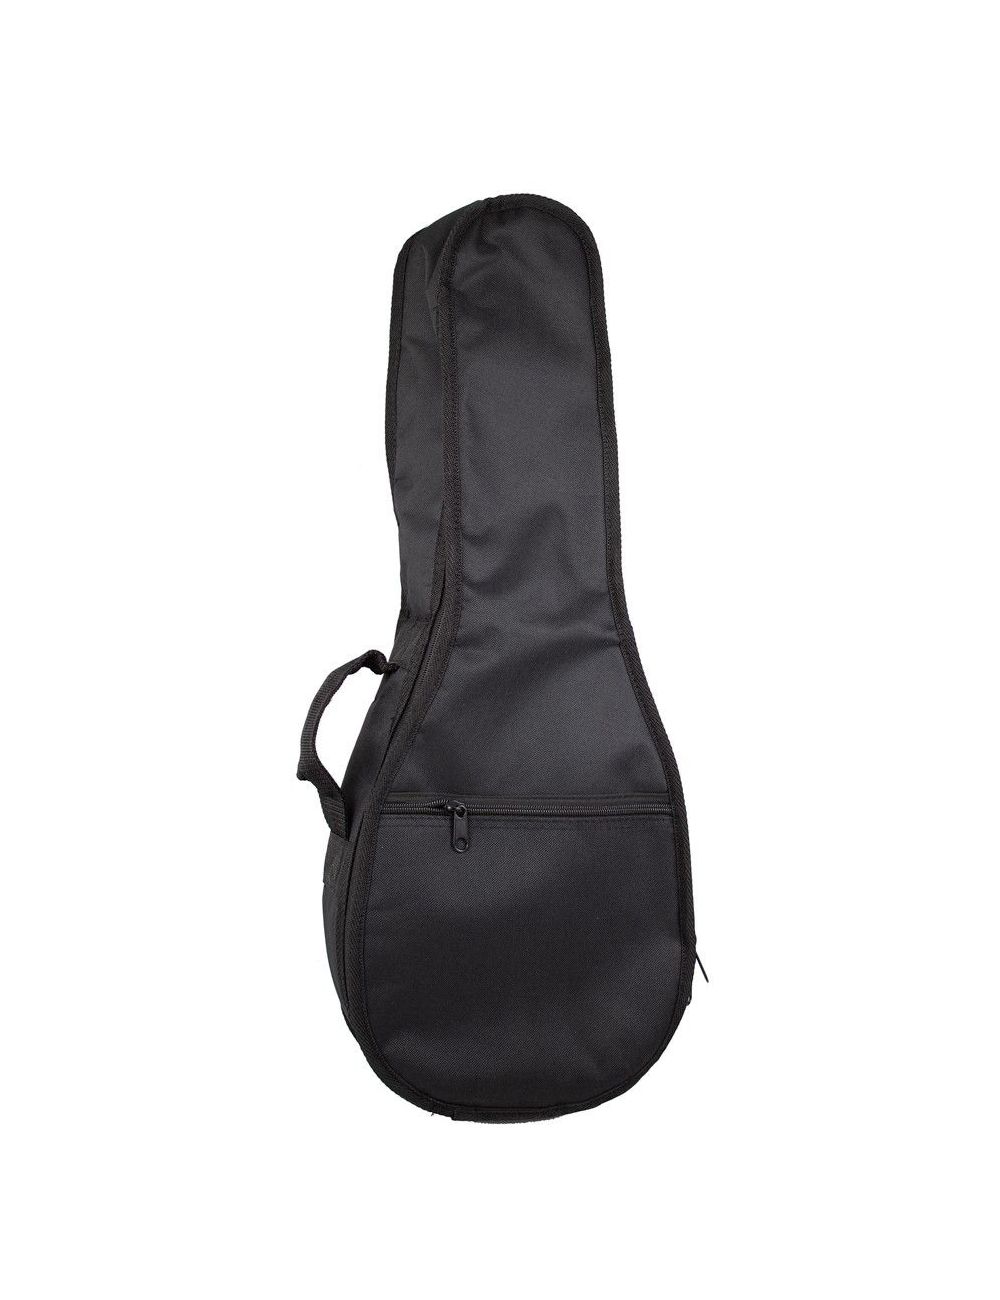 HORA Mandolin Gig Bag 1501114 Special sizes